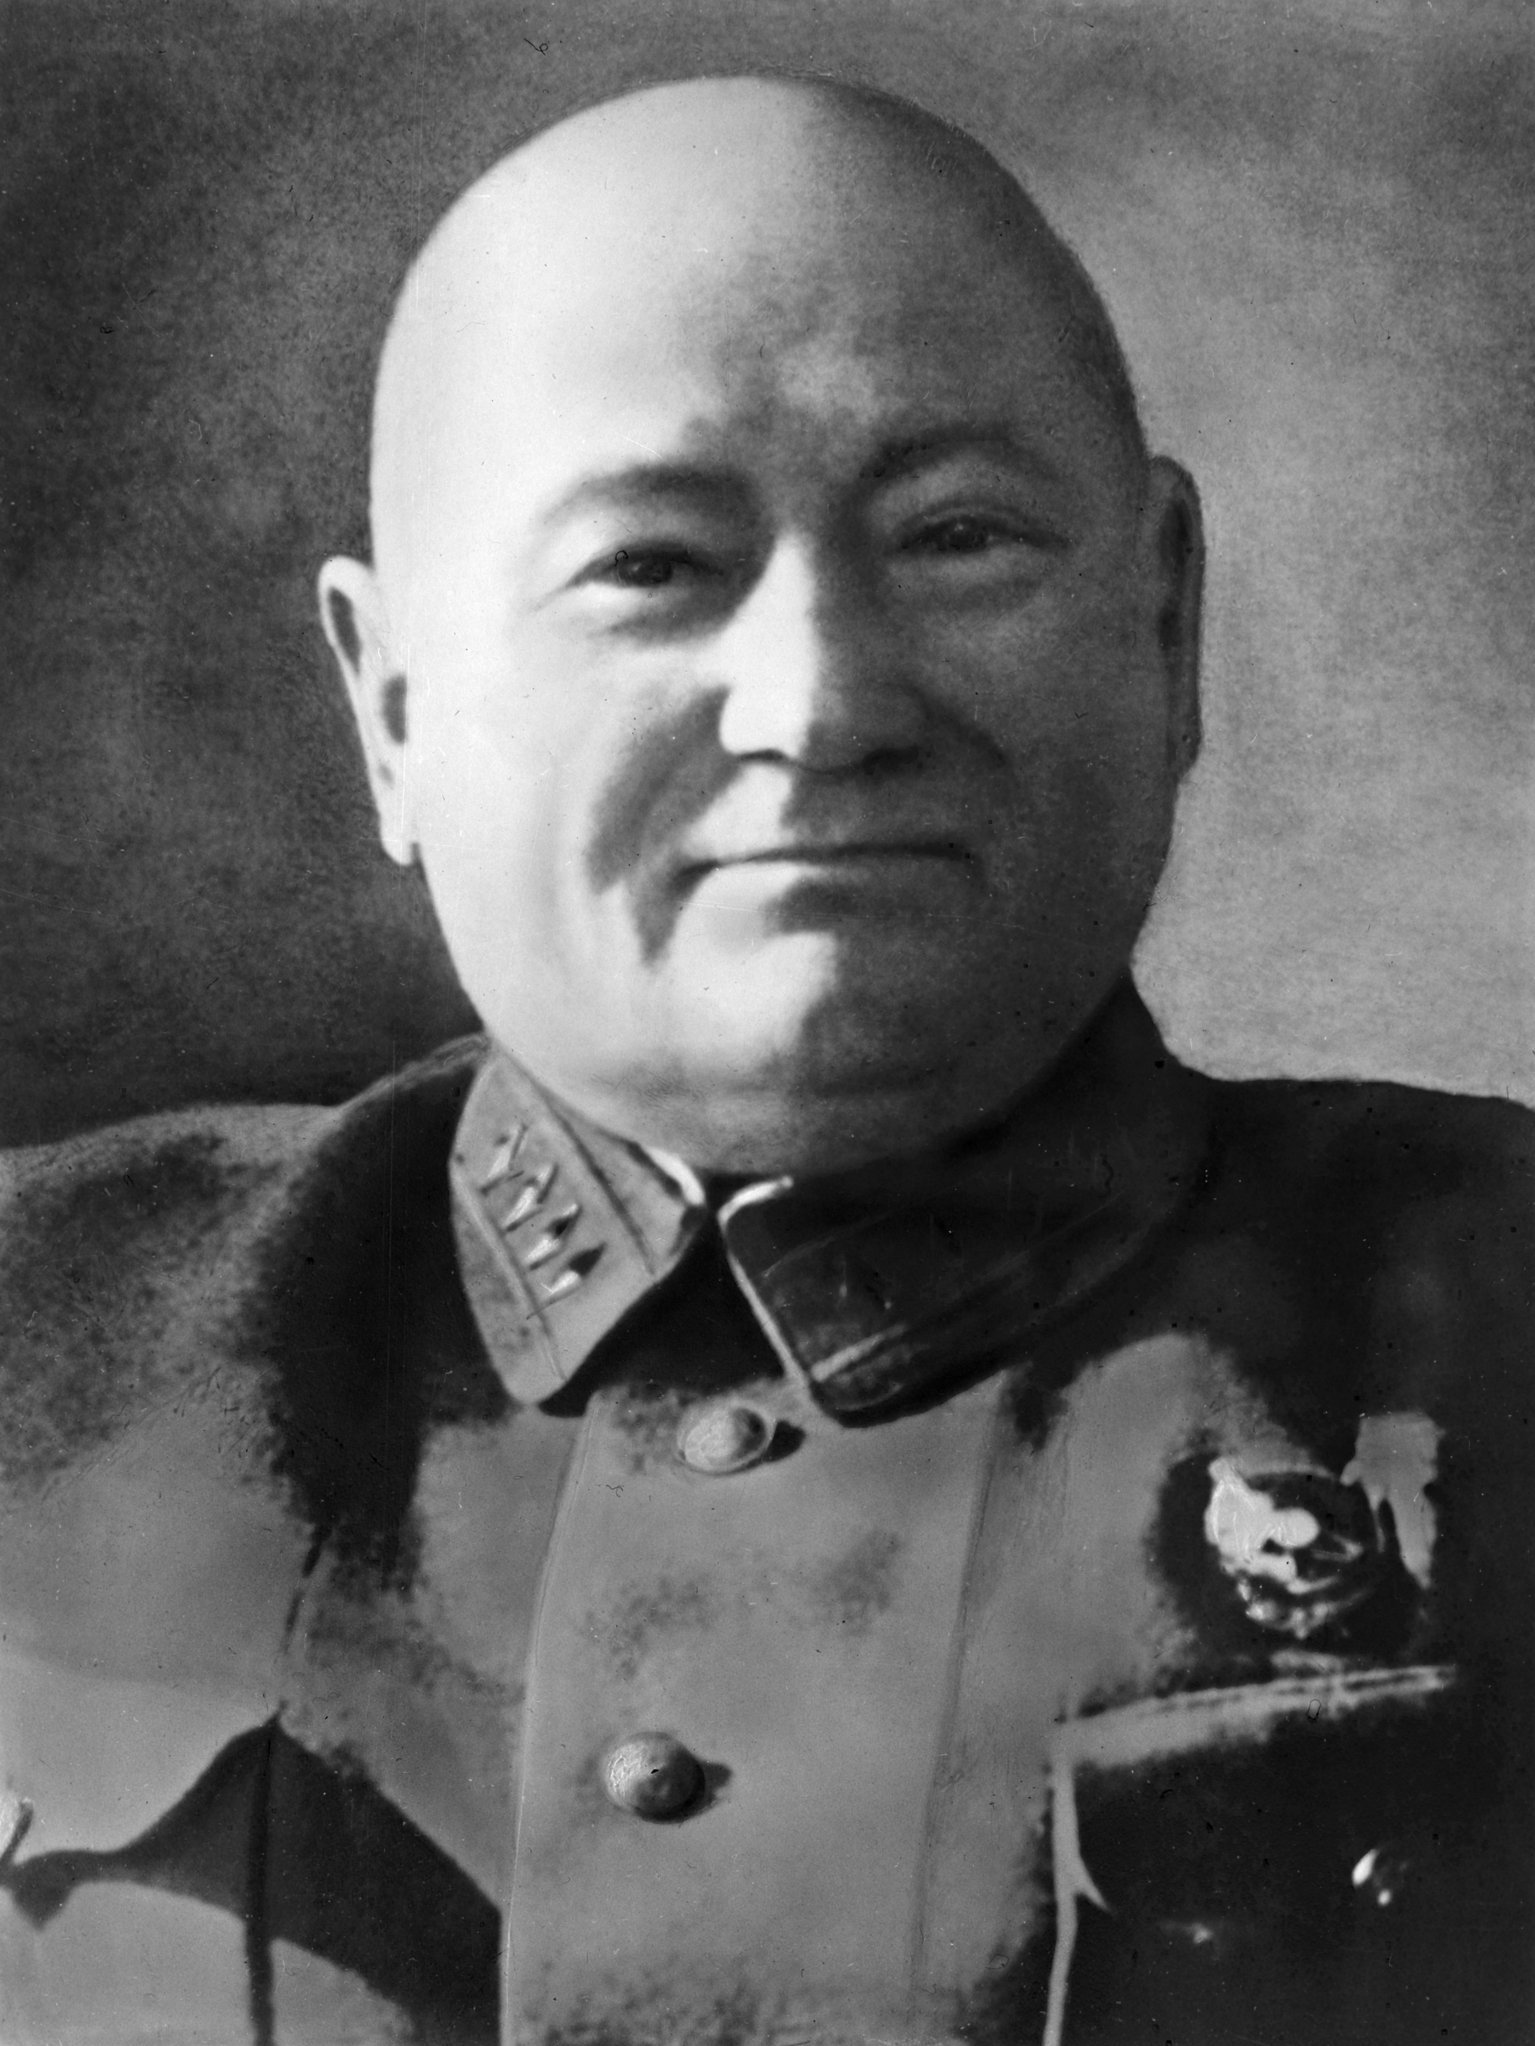 Юкум Вацетис — латышский, советский военачальник, командир Латышской стрелковой дивизии, командарм 2-го ранга. 1930-е гг.